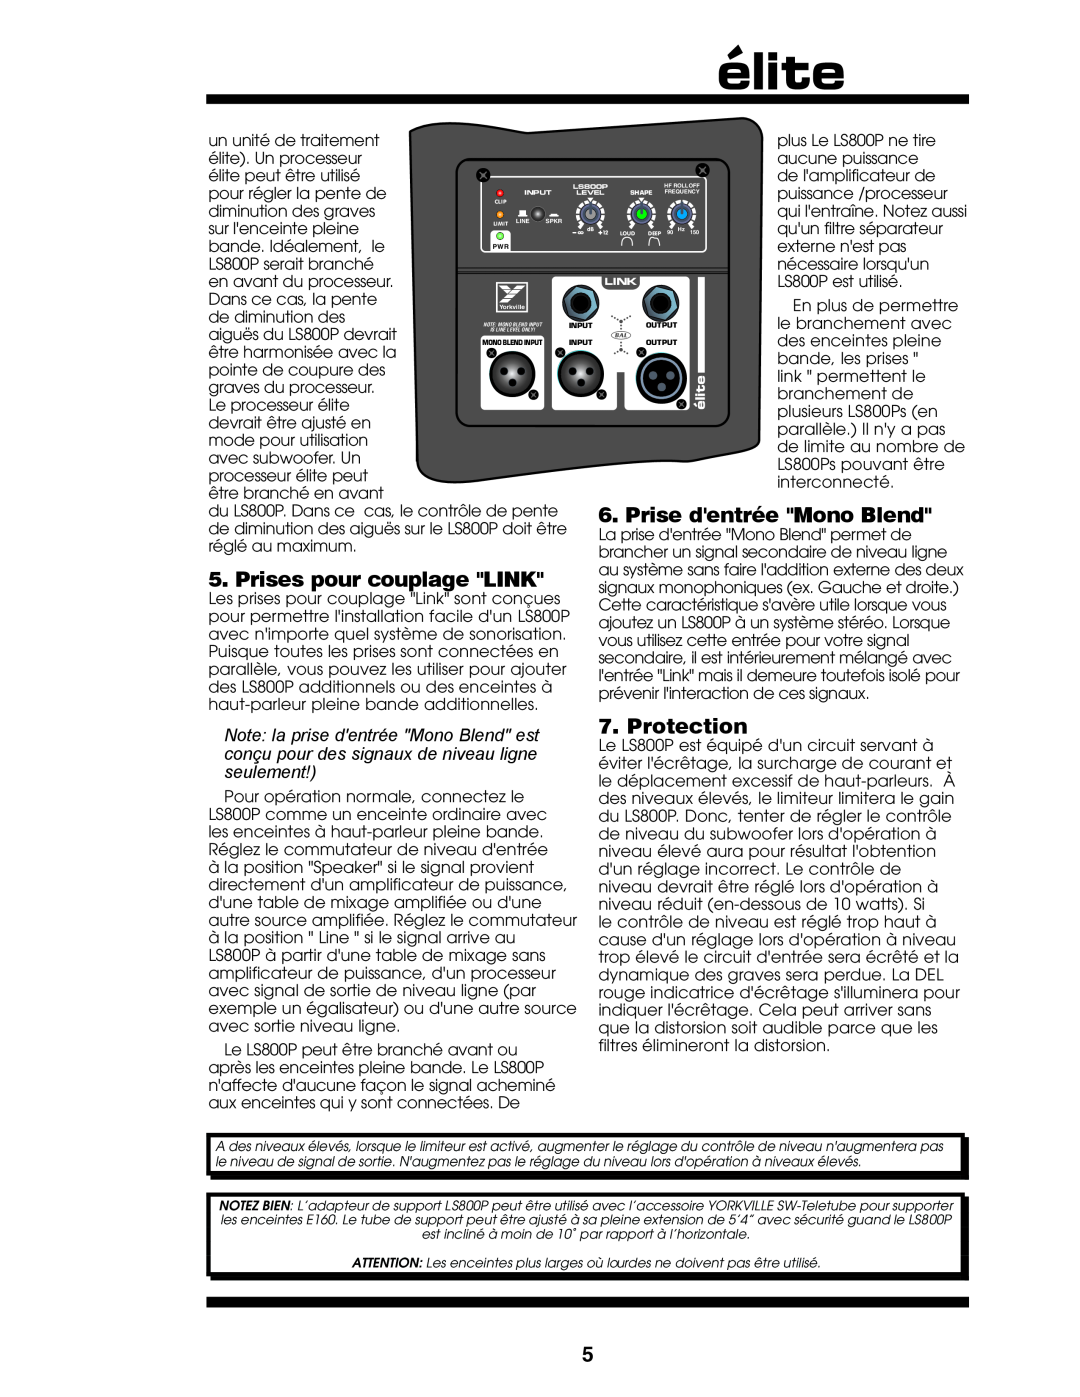 Yorkville Sound LS800P owner manual Prise dentrée Mono Blend, Prises pour couplage LINK, Protection, seulement 